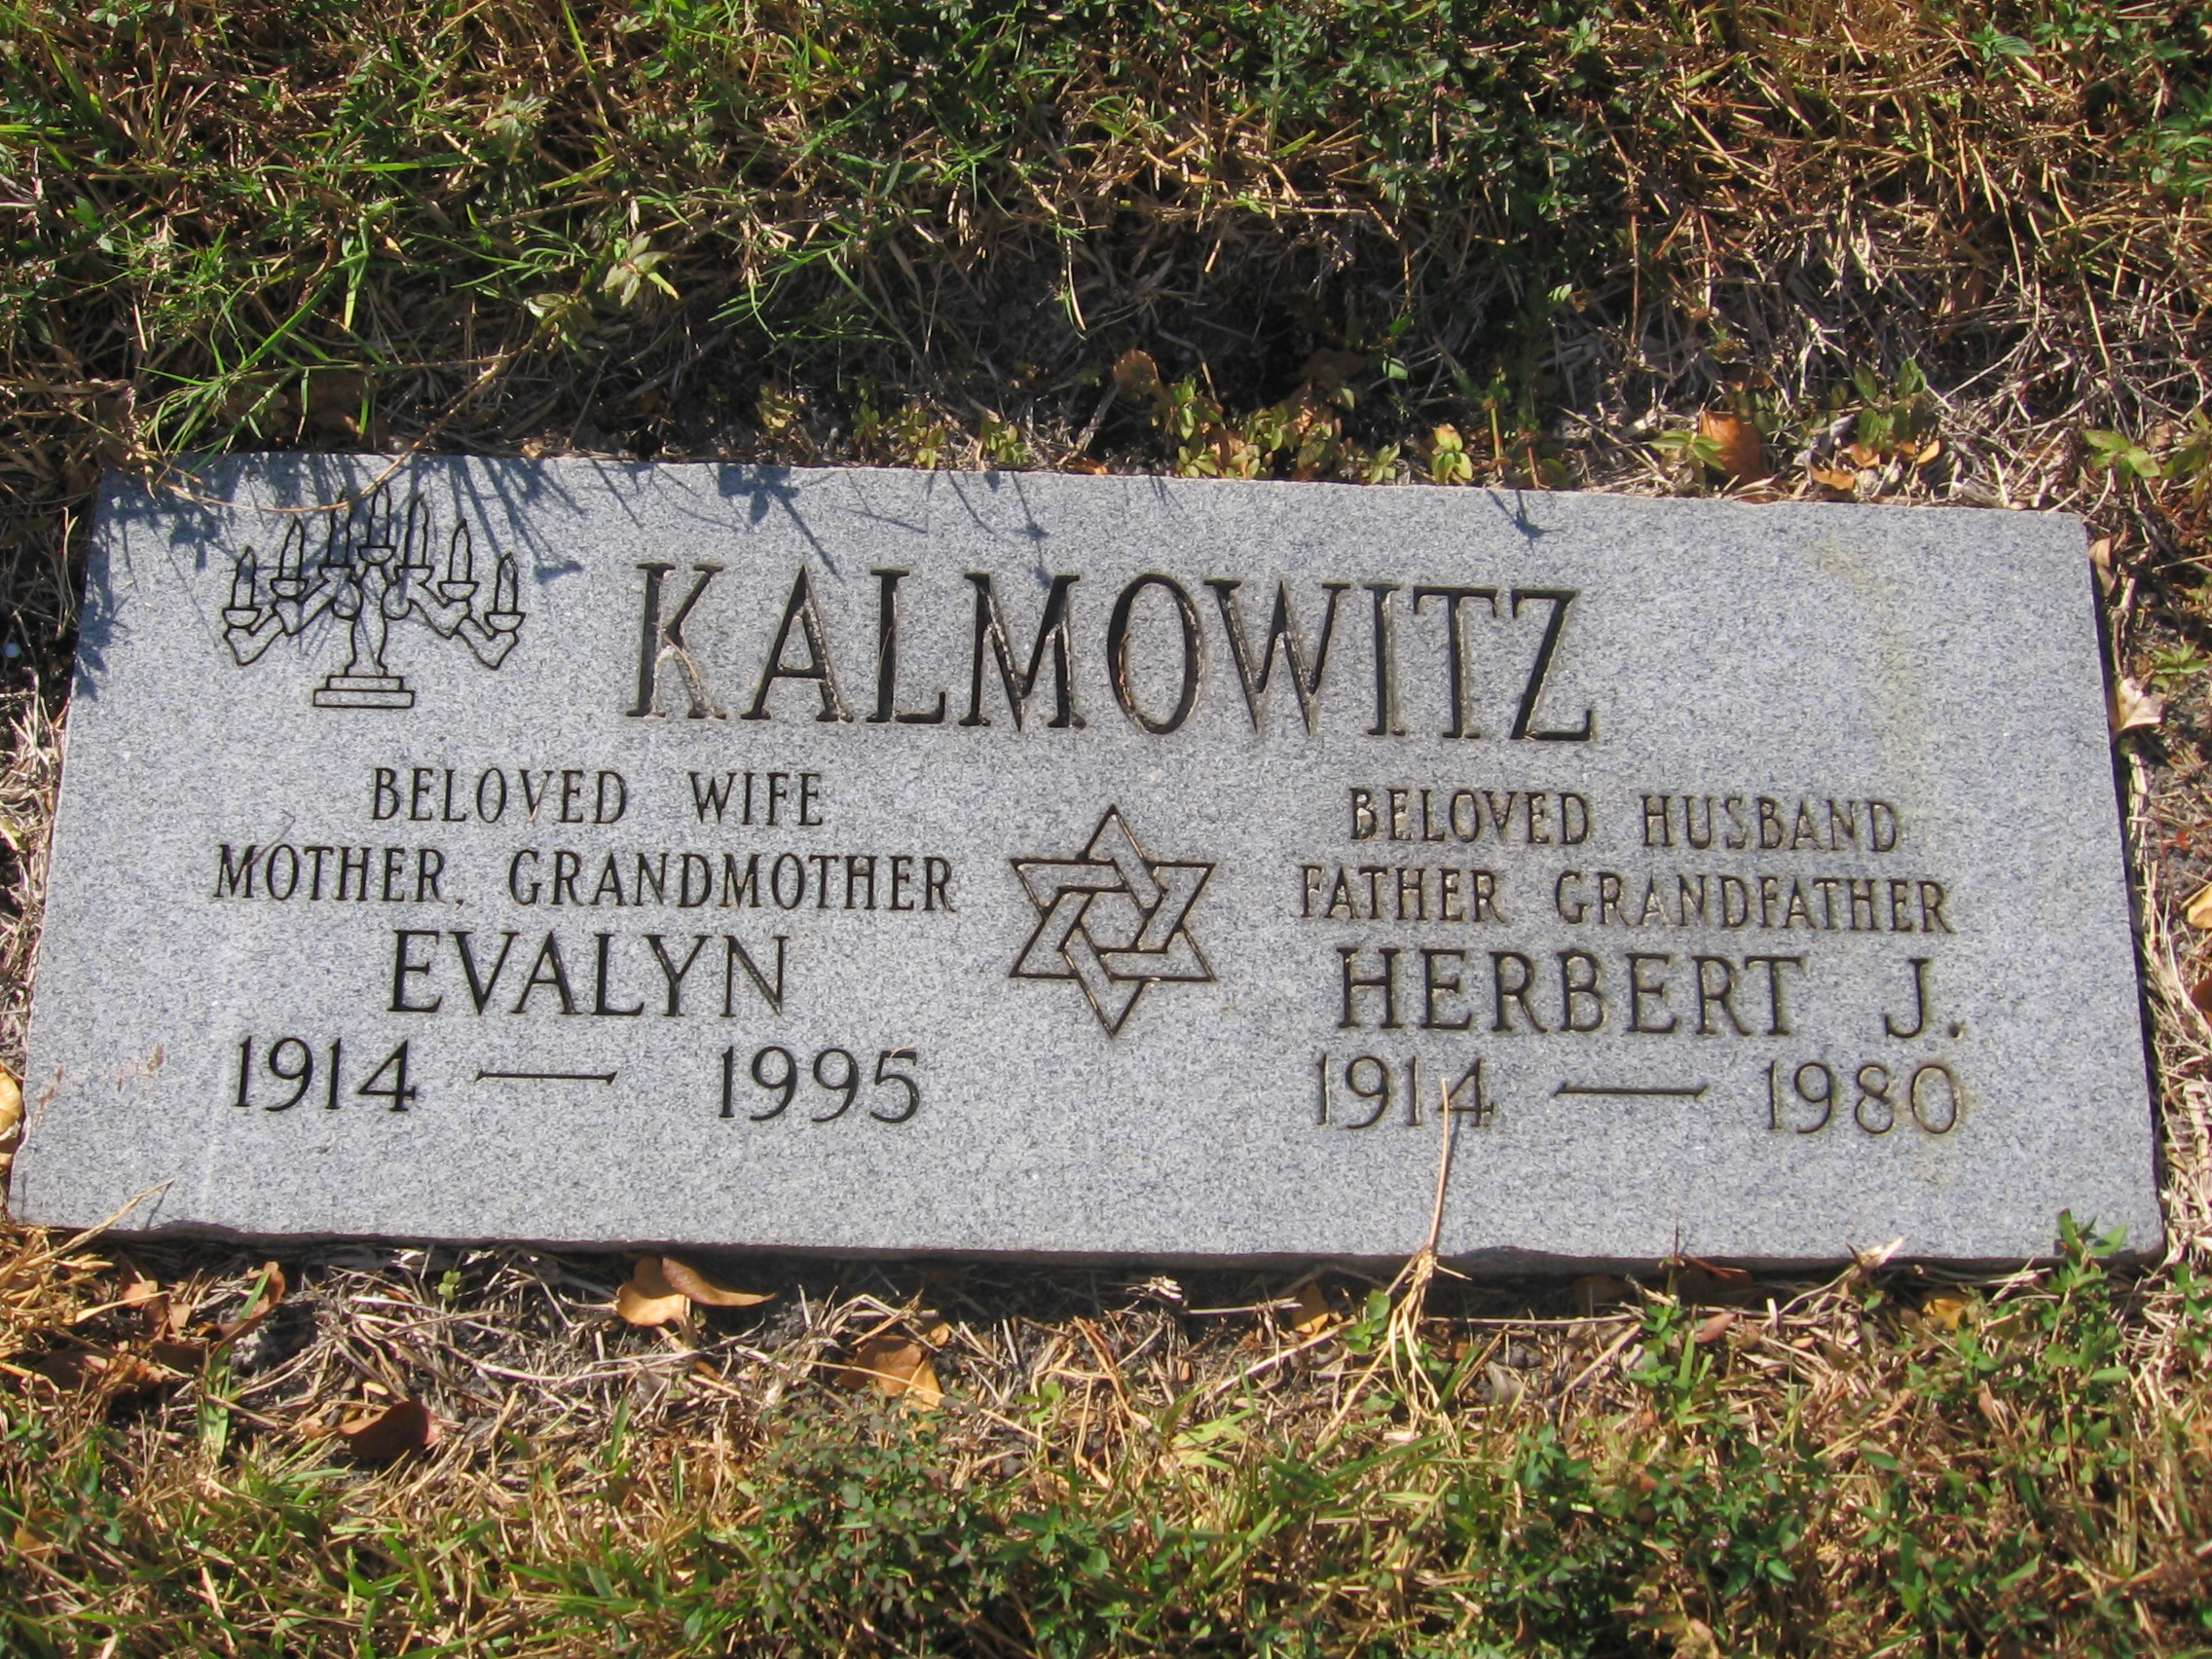 Herbert J Kalmowitz